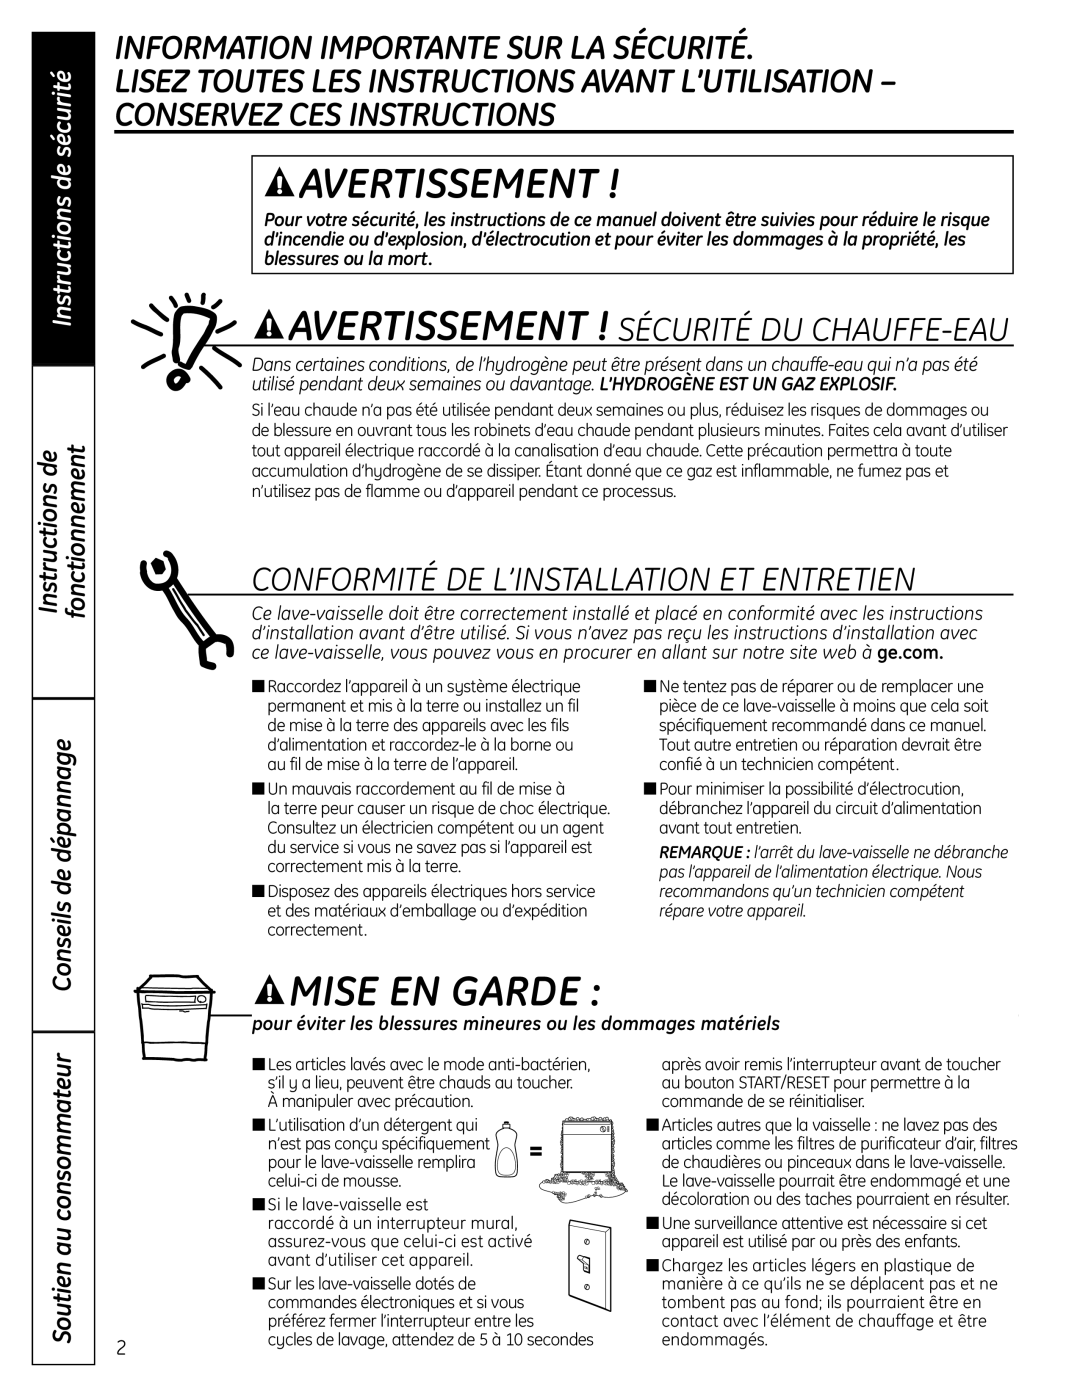 GE PDW8900 Series Information Importante Sur La Sécurité, Avertissement ! Sécurité Du Chauffe-Eau, Instructions de 